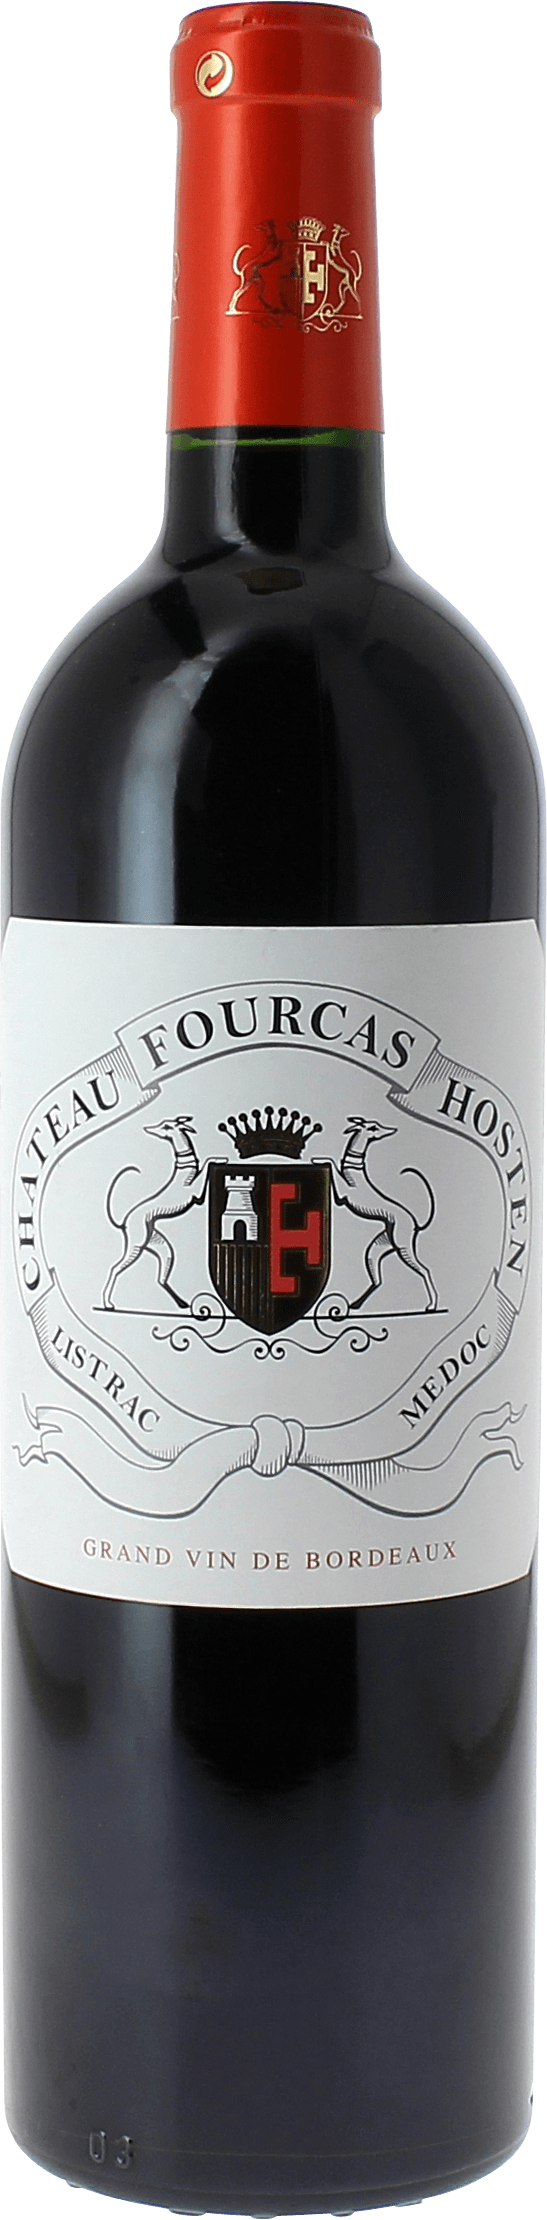 Fourcas hosten 2020  Listrac Mdoc, Slection Bordeaux Rouge